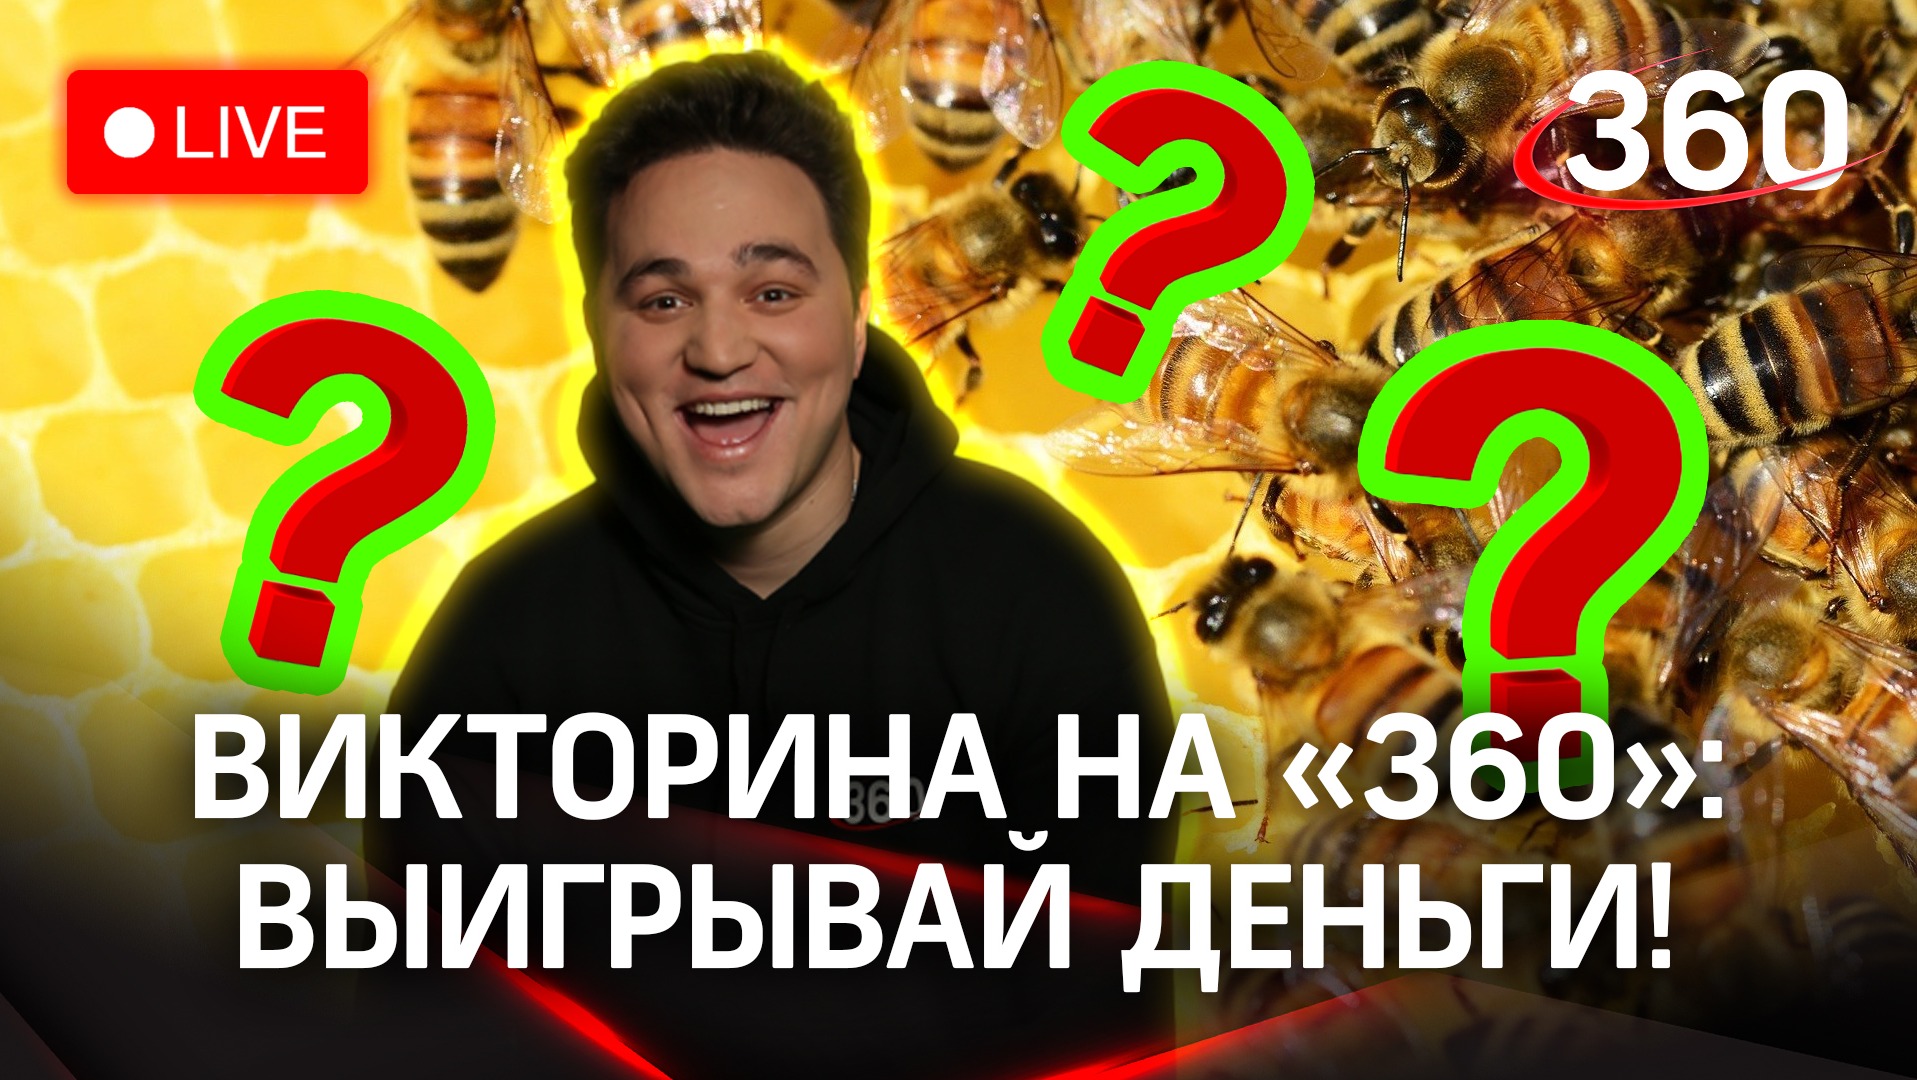 Отвечай и выигрывай! Викторина на «360»: «Парк пчёл» в округе Воскресенск